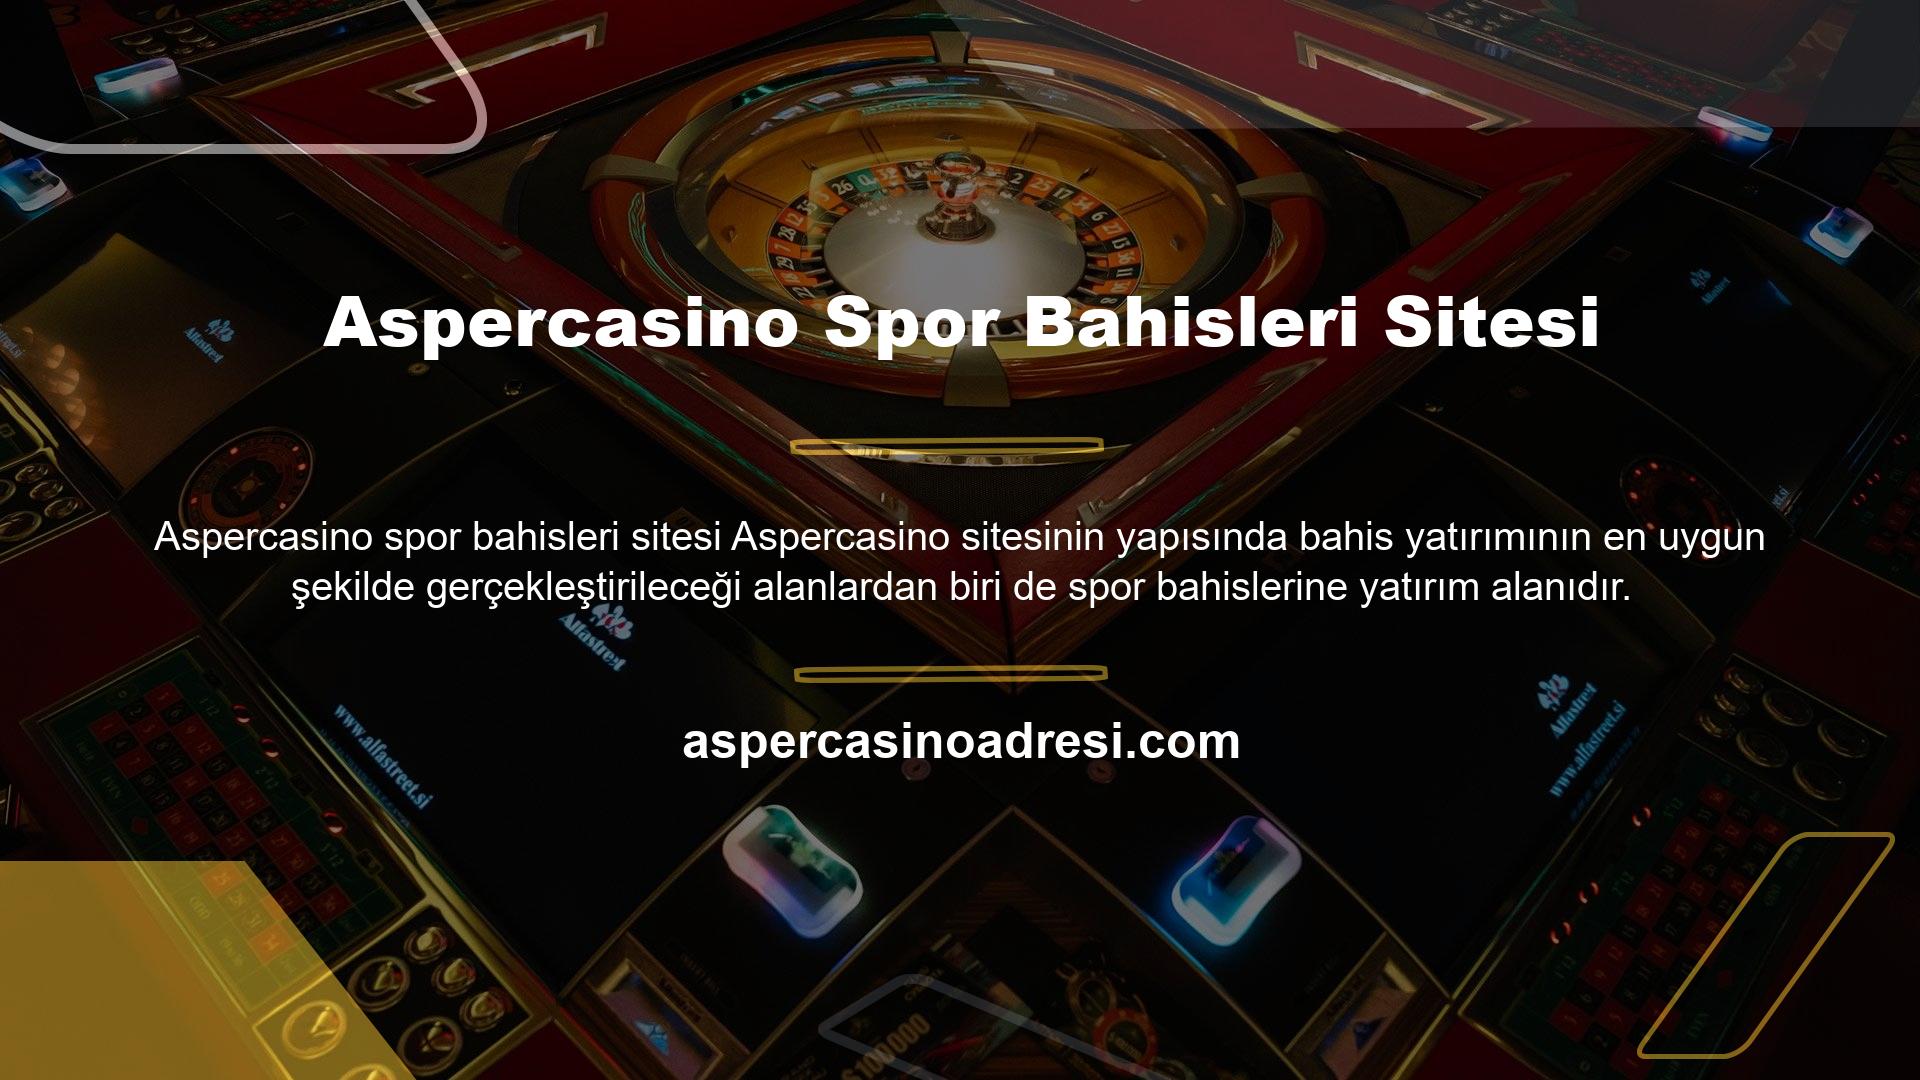 Casino oyunları gibi spor oyunları da bahis tutkunlarını heyecanlandırır